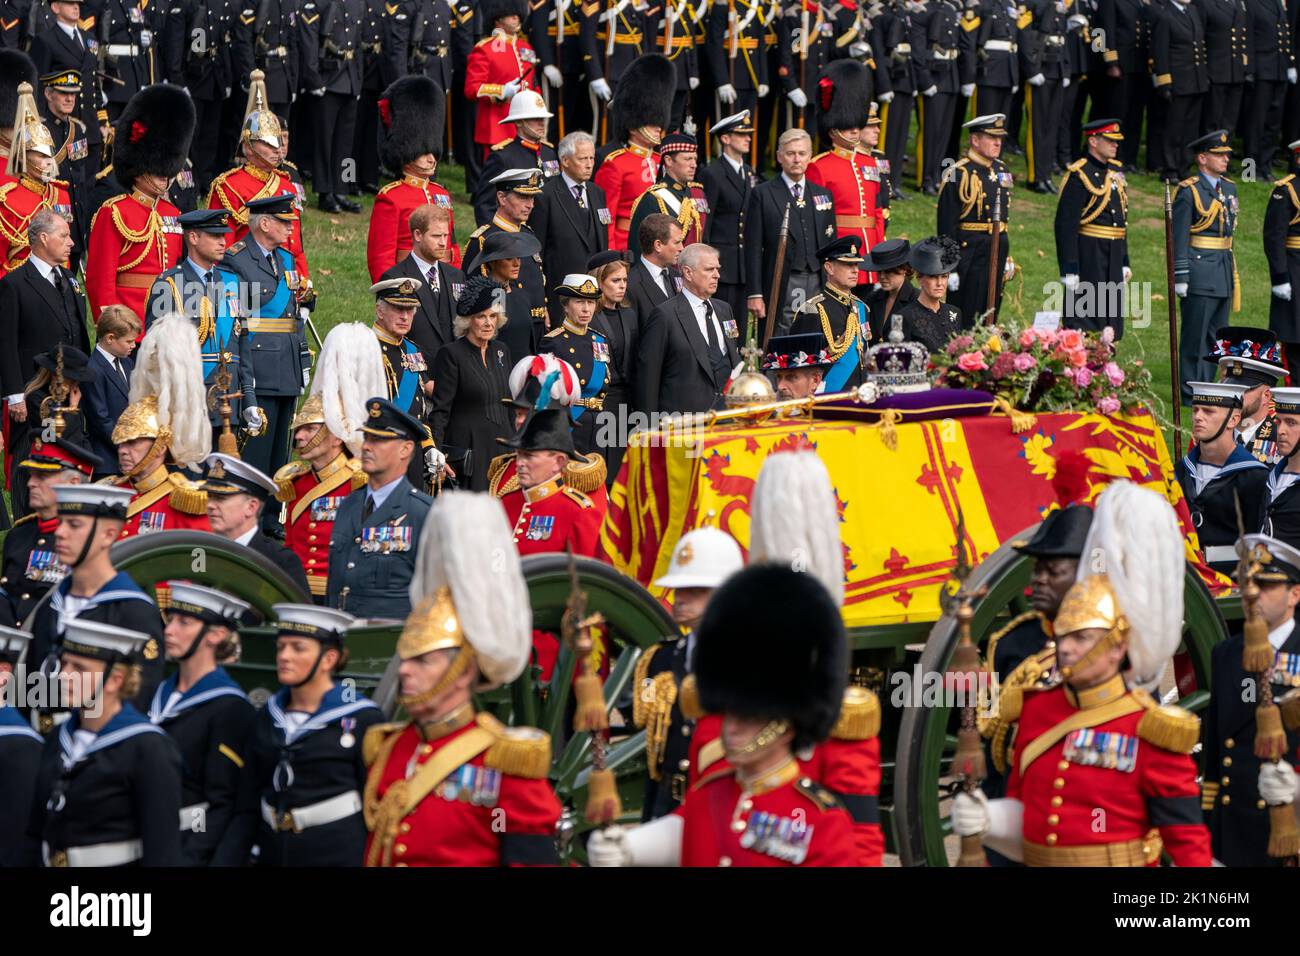 El príncipe Jorge, el príncipe de Gales, el rey Carlos III, el duque de Sussex, la reina consorte, la duquesa de Sussex, la princesa Real, la princesa Beatrice, Peter Phillips, el duque de York, El Conde de Wessex y la Condesa de Wessex miran como el Carruaje de Armas de Estado que lleva el ataúd de la Reina Isabel II llega al Arco de Wellington durante la Procesión Ceremonial que sigue a su Funeral de Estado en la Abadía de Westminster, Londres. Foto de stock